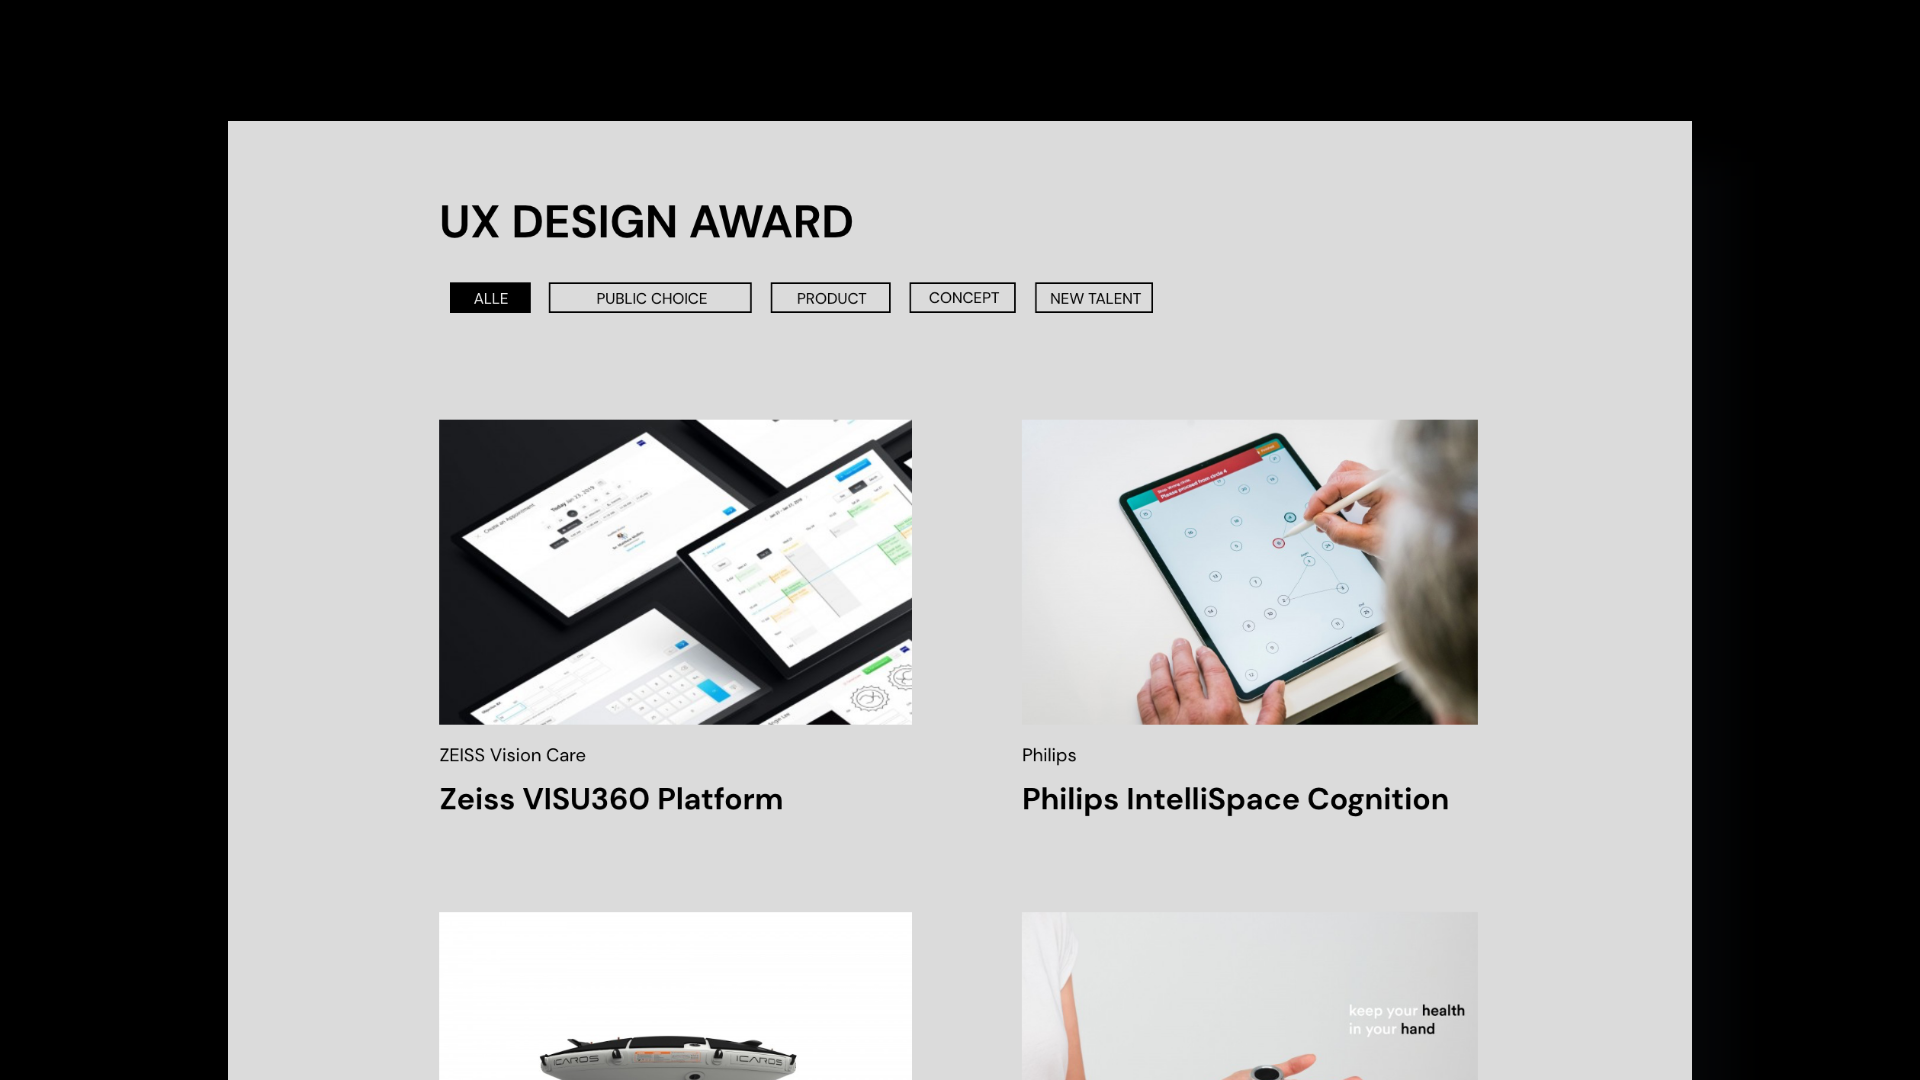 Startseite der UX Design Awards, Ansicht der Awards